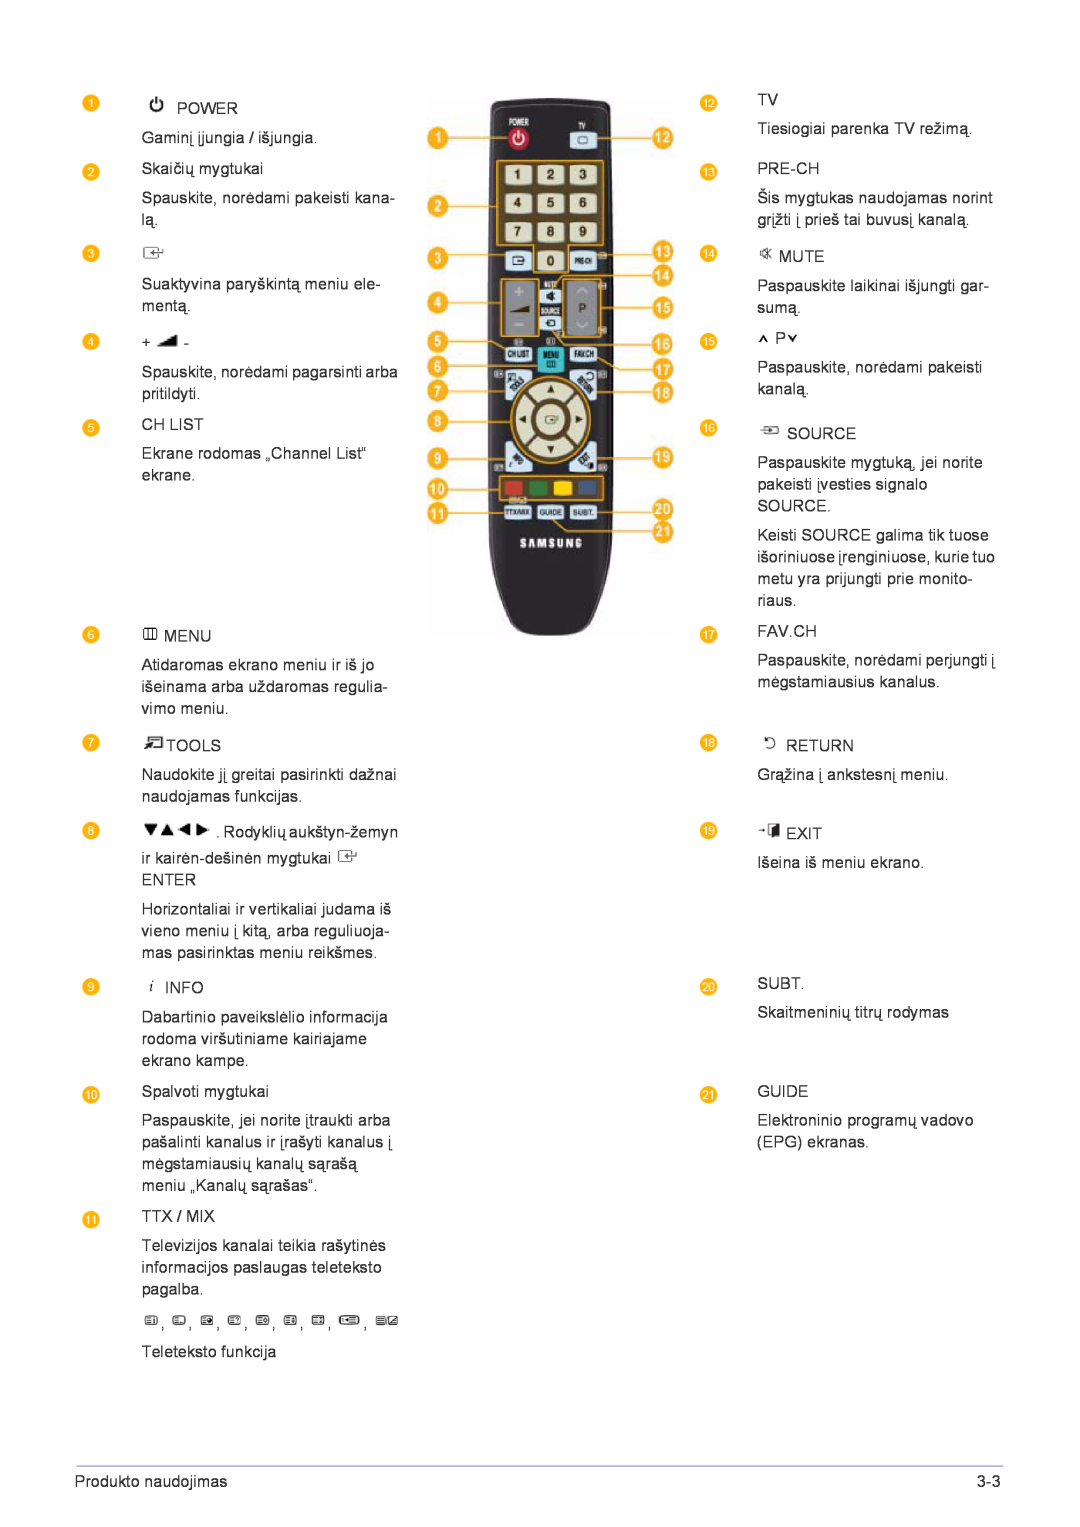 Samsung LS22FMDGF/EN manual Šis mygtukas naudojamas norint grįžti į prieš tai buvusį kanalą 